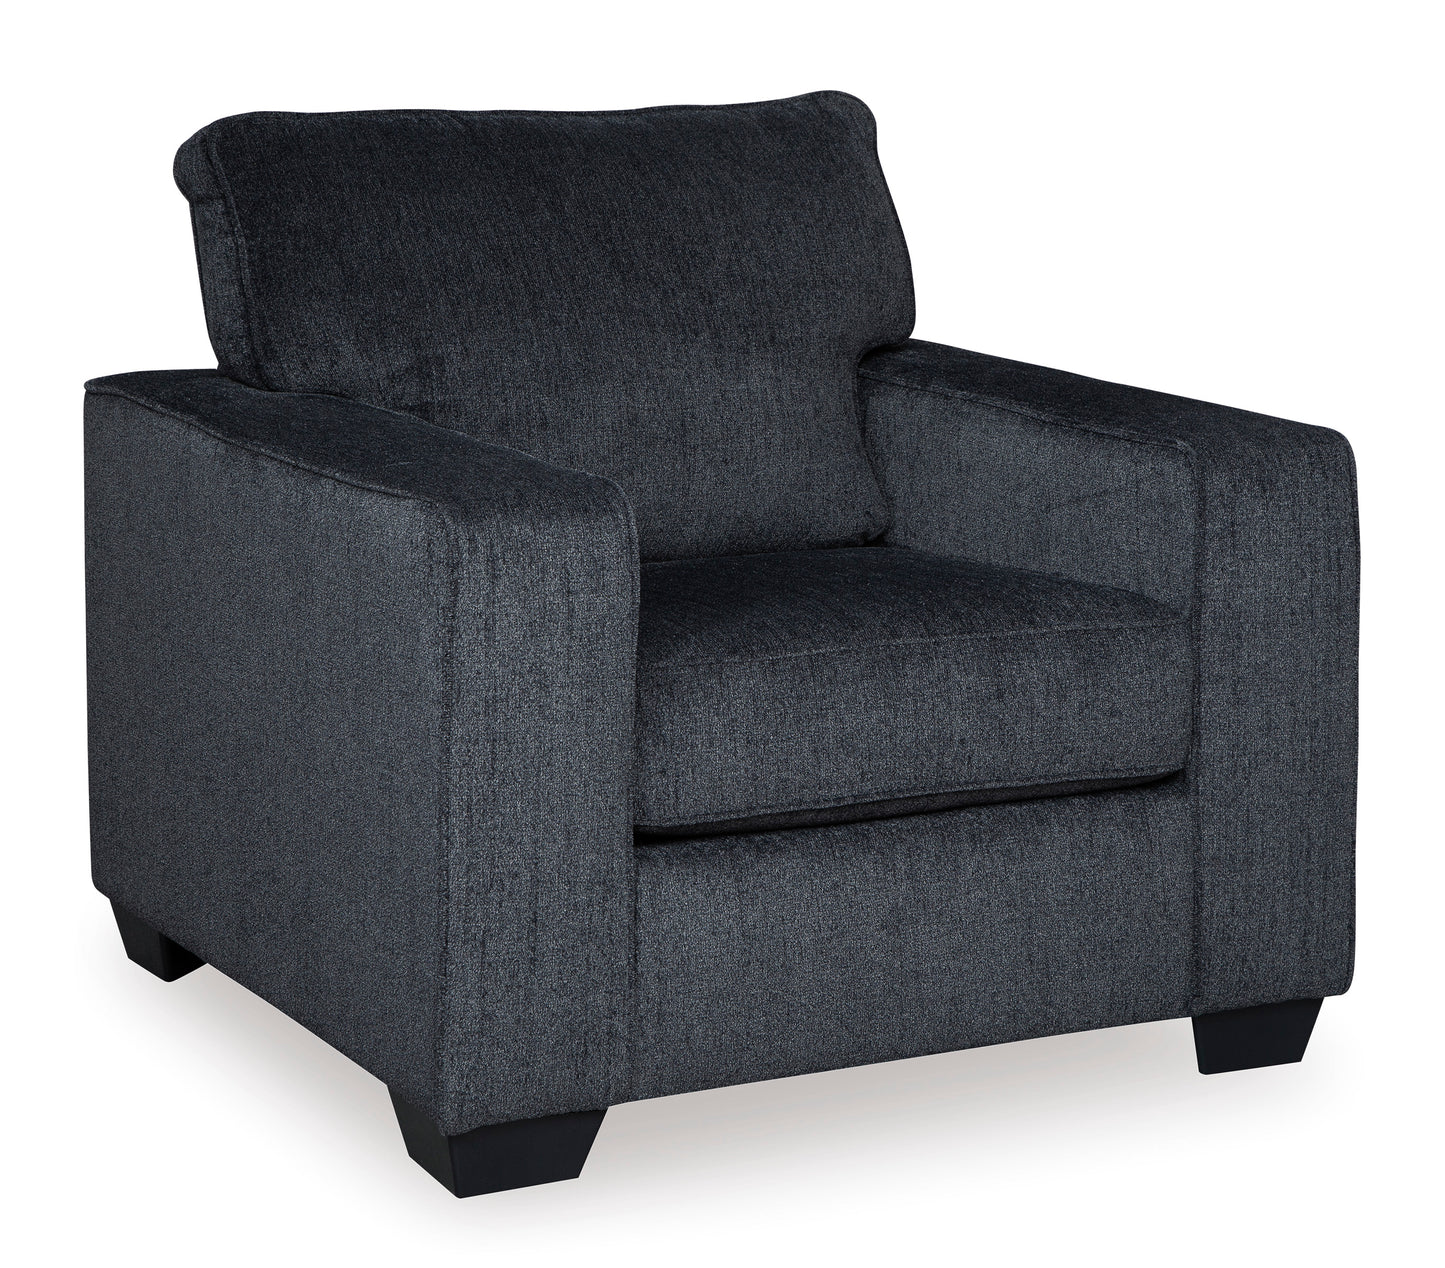 Ashley Altari Sofa, Love, Chair, Queen Sleeper